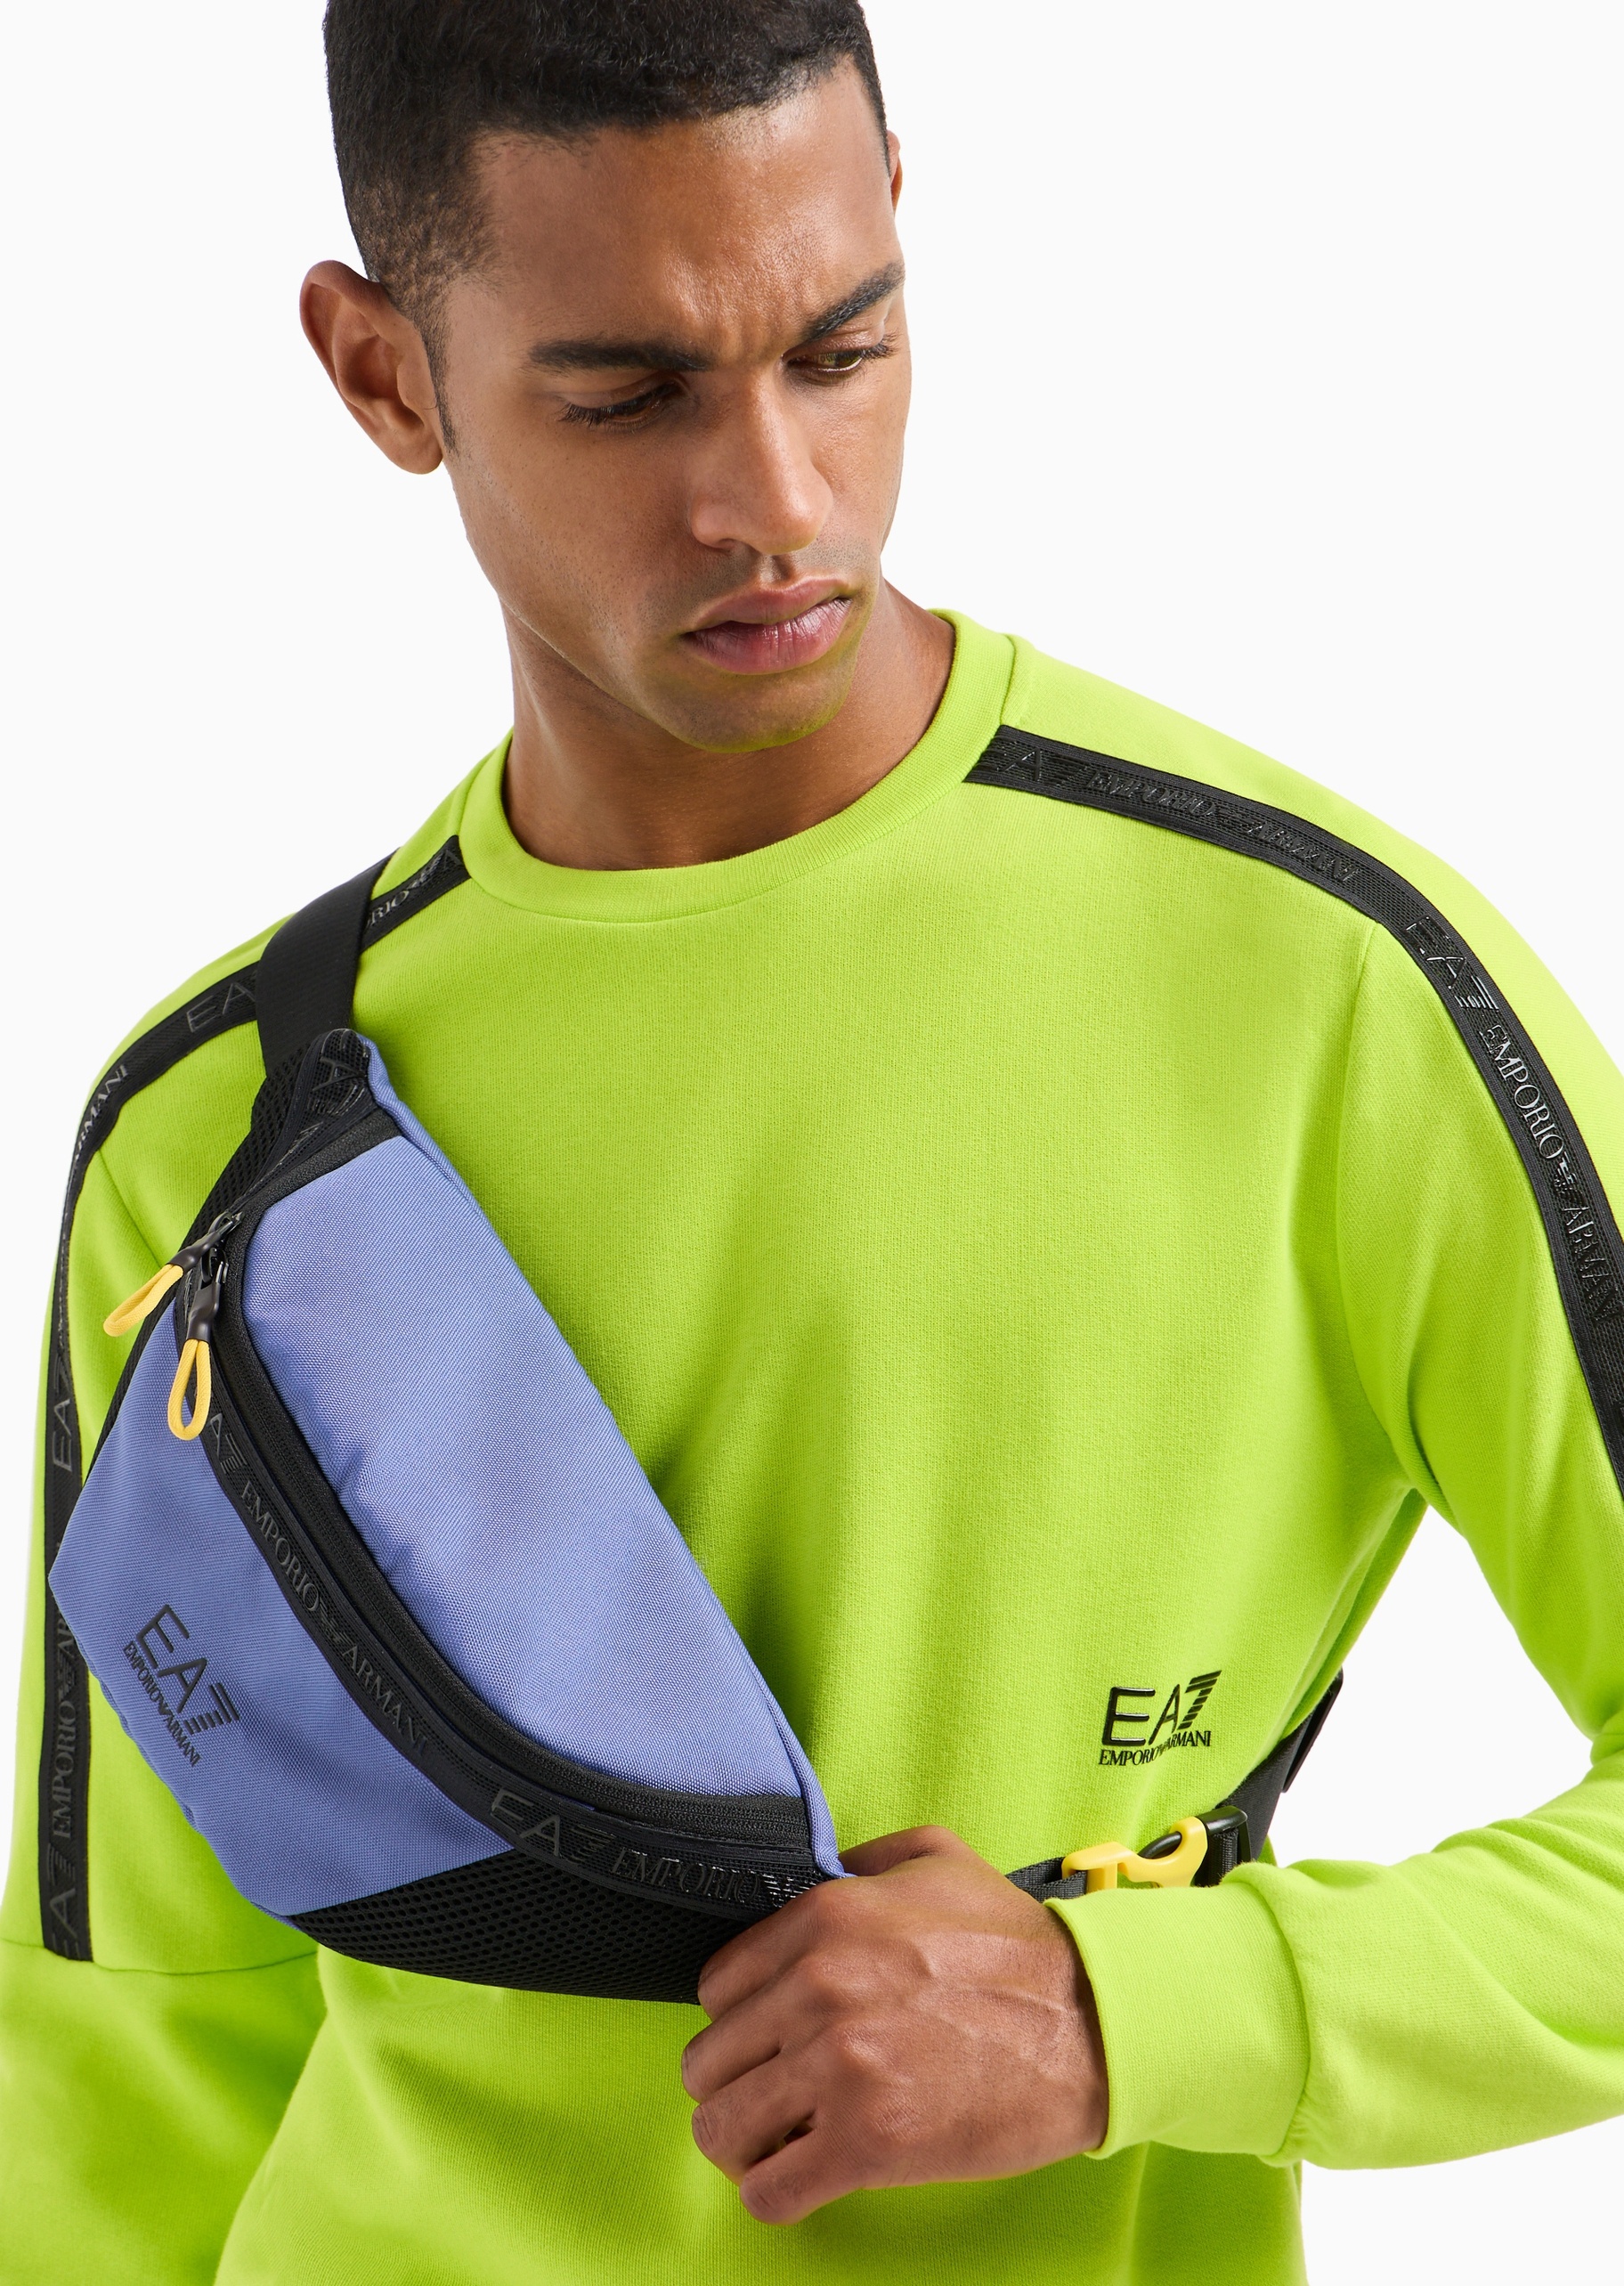 EA7 男士拉链可调节插扣袢带健身训练斜挎腰包